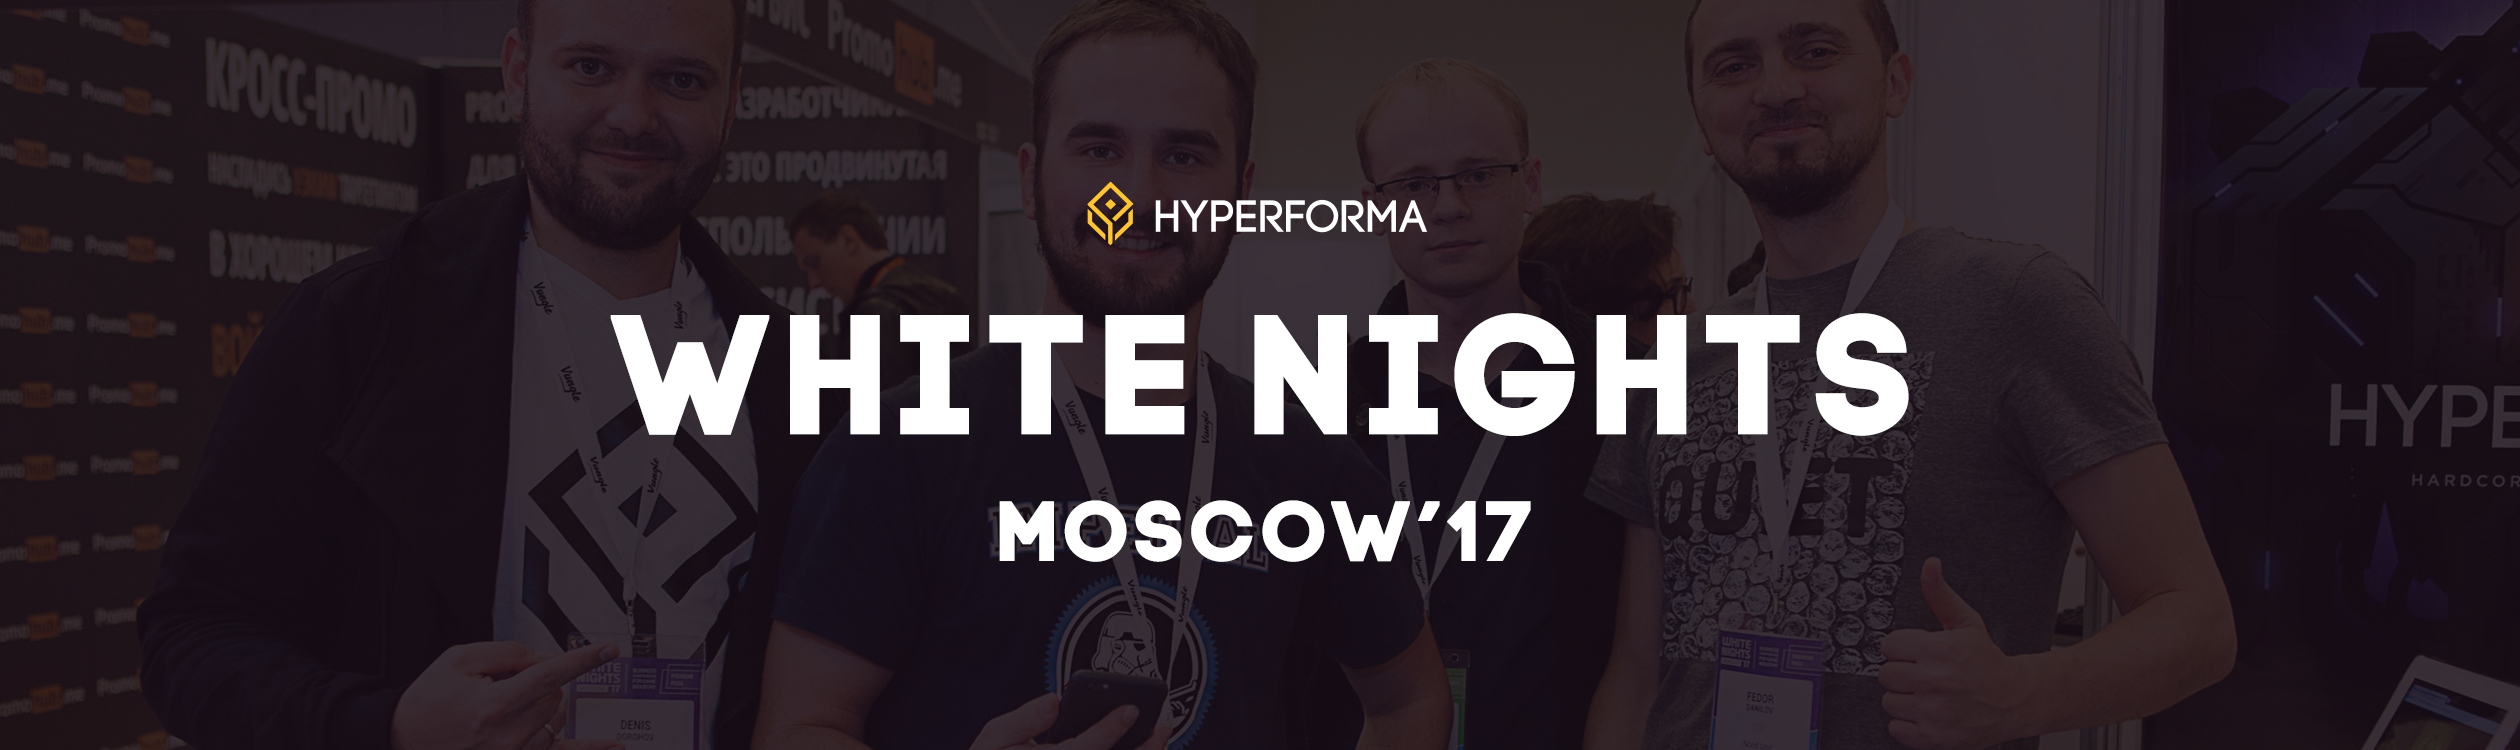 Hyperforma на White Nights в Москве